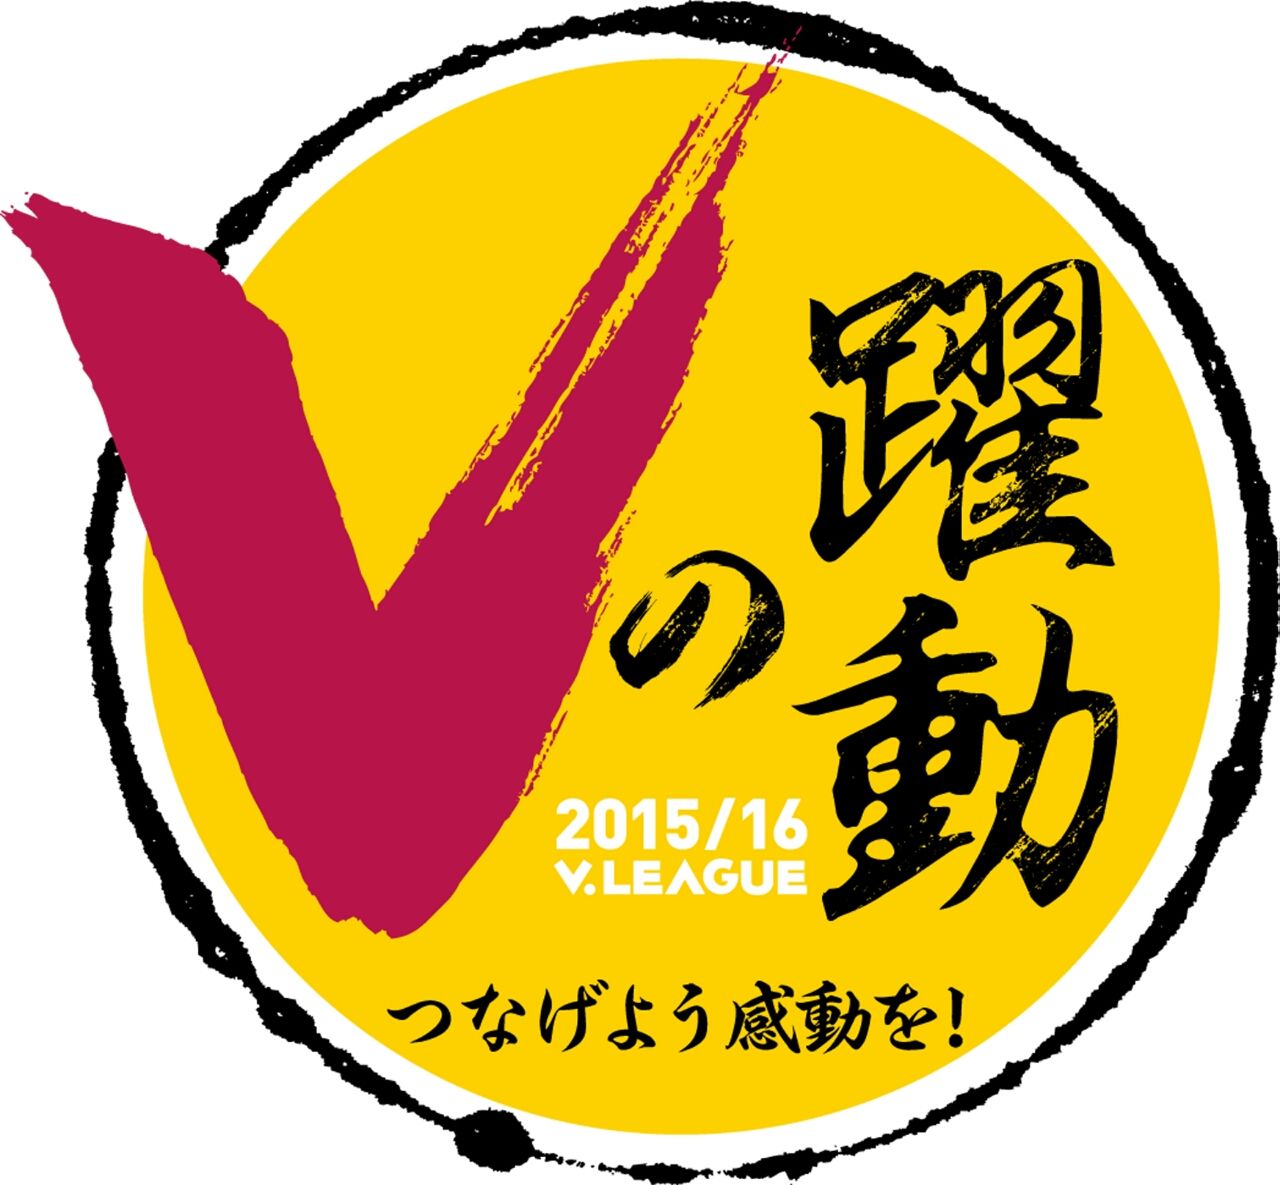 Vリーグ 各カテゴリー別順位表と短評 チャレンジリーグ 編 全日本女子バレーボールの今日 そして明日